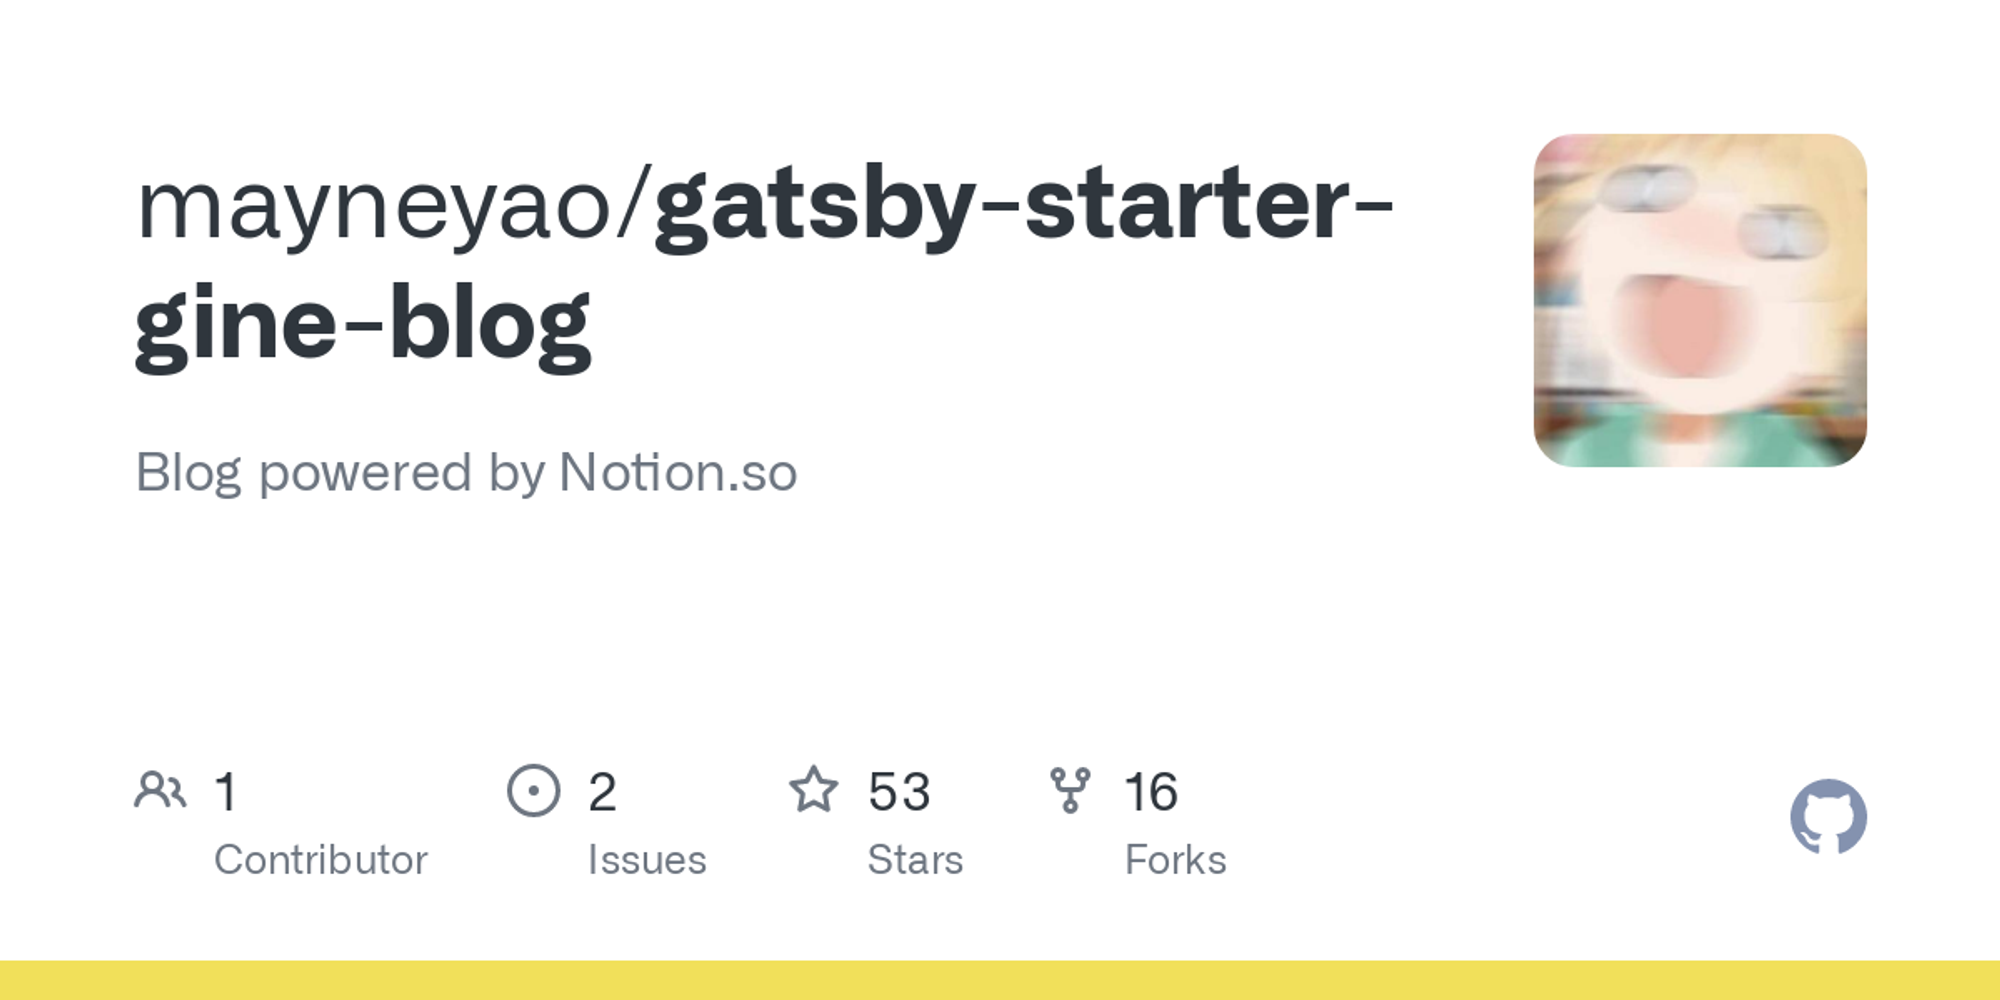 mayneyao/gatsby-starter-gine-blog